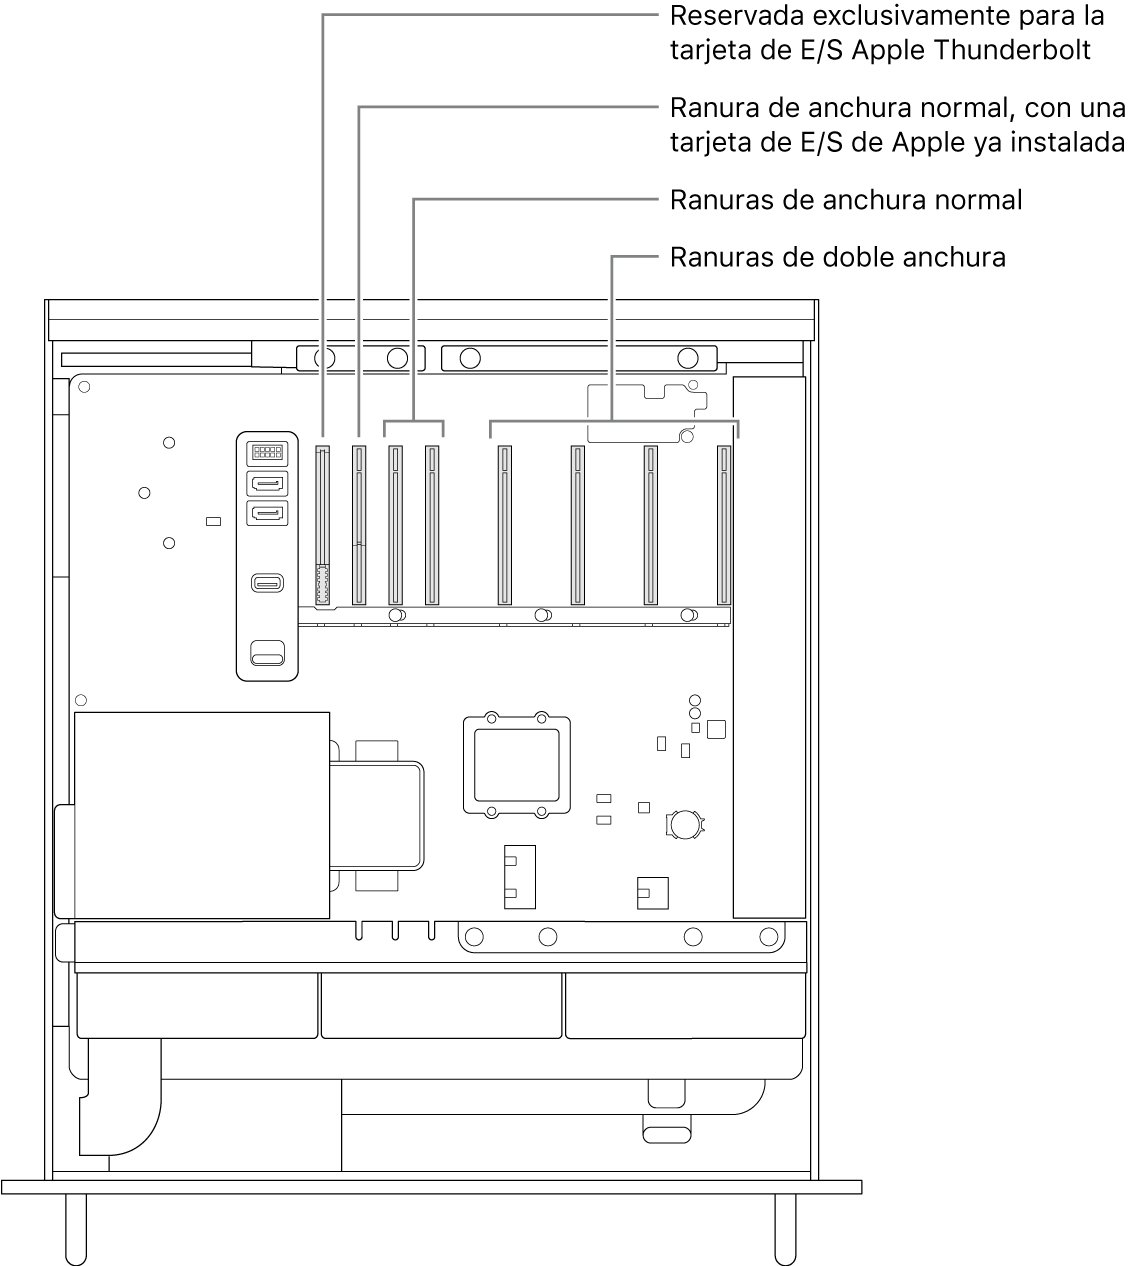 El lateral del Mac Pro abierto con indicaciones que muestran la ubicación de la ranura para la placa de E/S de Thunderbolt, la ranura de ancho único de la tarjeta de E/S de Apple, dos ranuras de ancho único y cuatro ranuras de ancho doble.